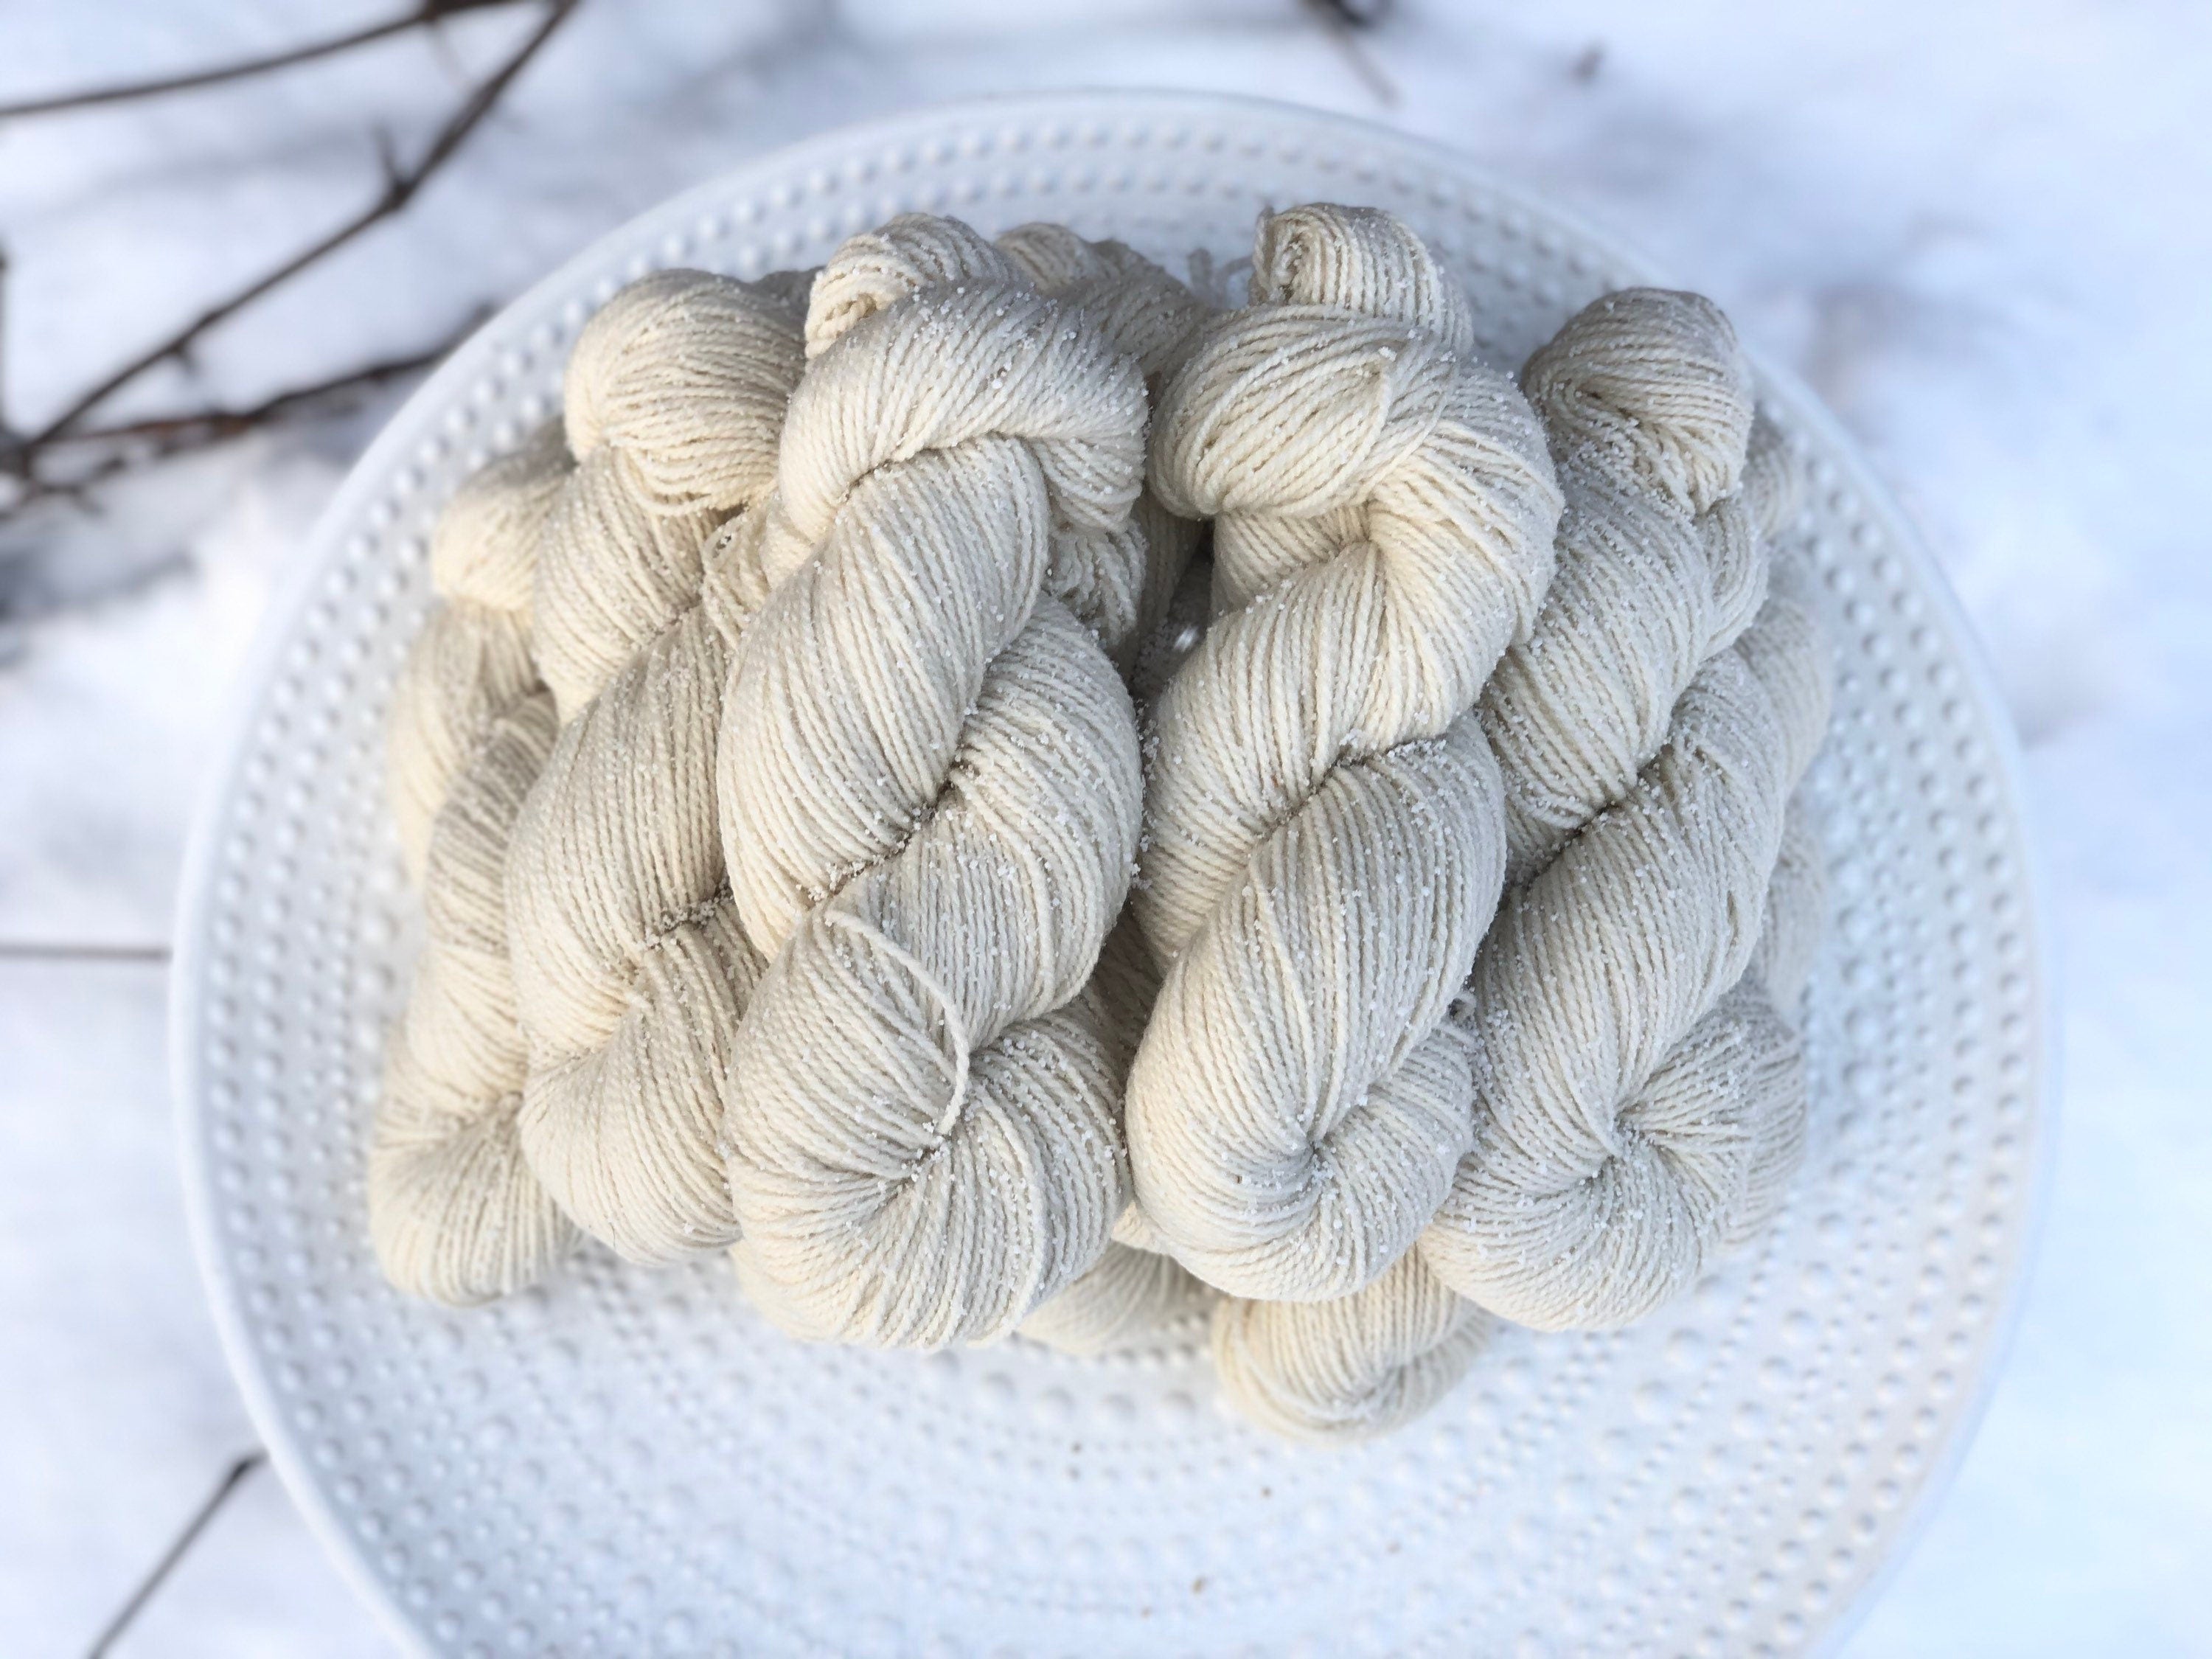 Extra soft White merino wool yarn